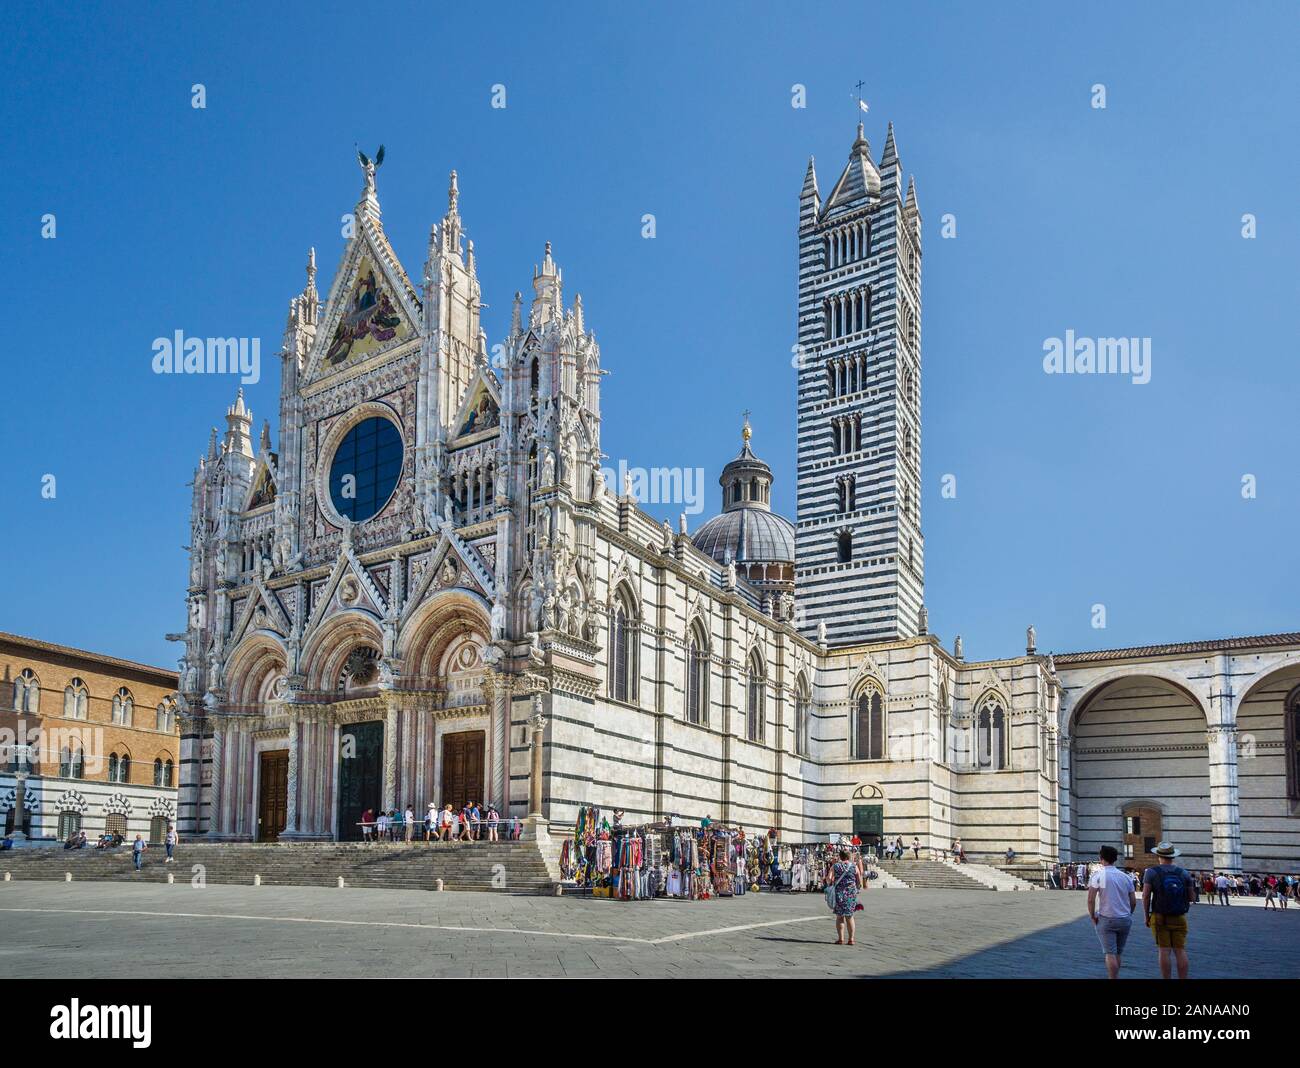 Facciata e campanile del Duomo di Siena con strisce alternate di colore bianco e verde-marmo nero, che simboleggiano i colori di Siena, Toscana, Italia Foto Stock